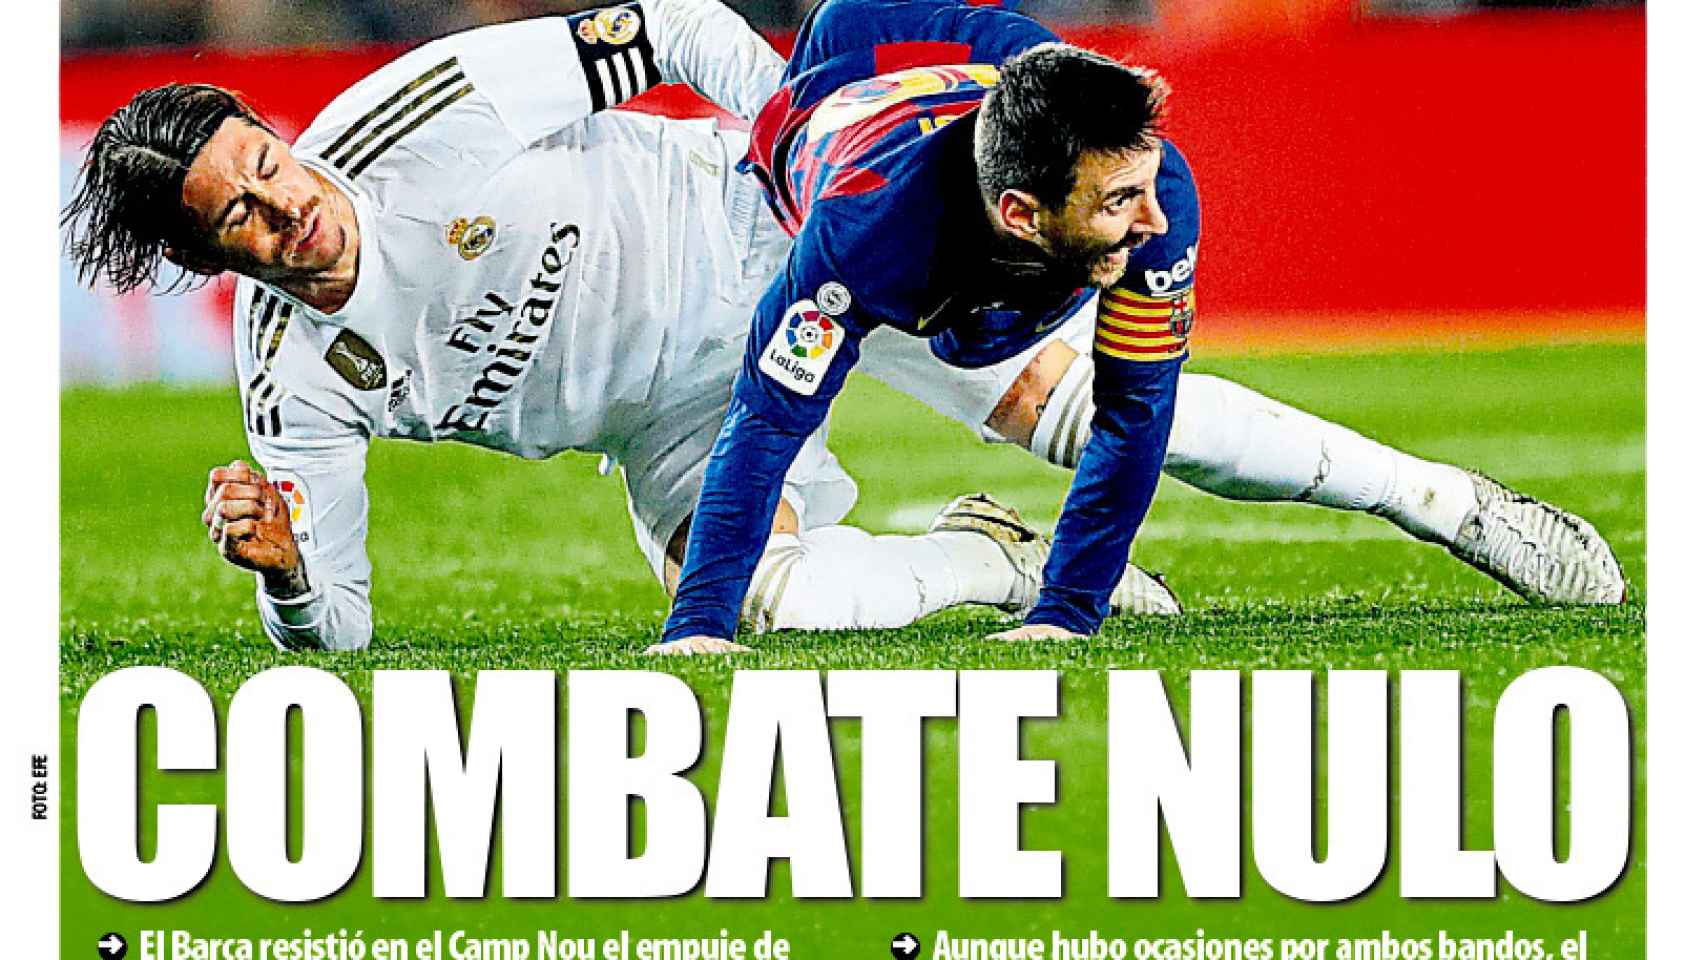 La portada del diario Mundo Deportivo (19/12/2019)